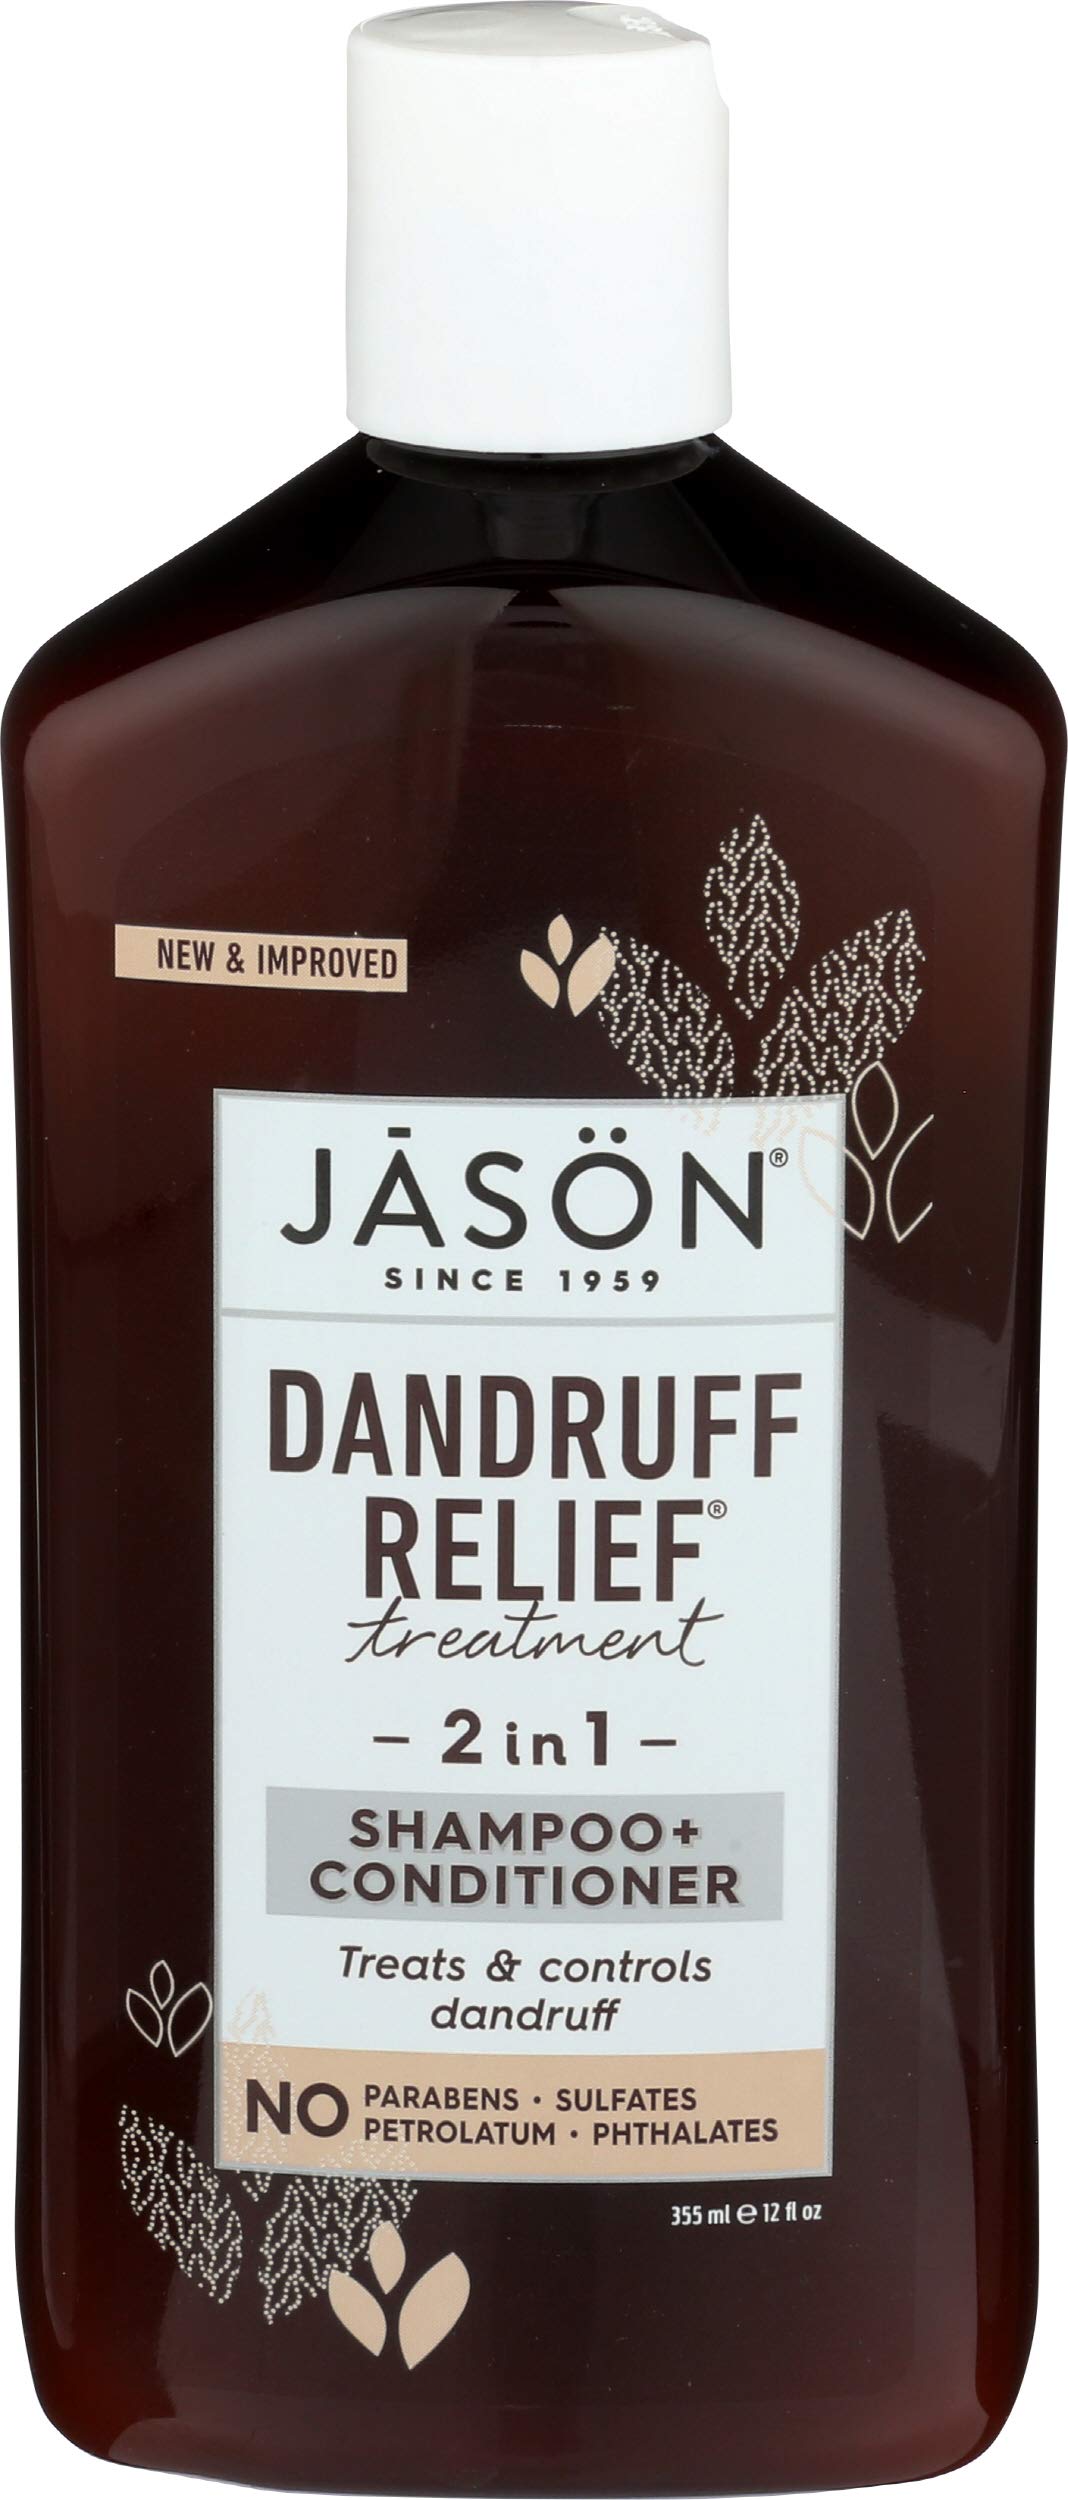 Jason Dandruff Relief 2 in 1 Shampoo & Conditioner 355ml